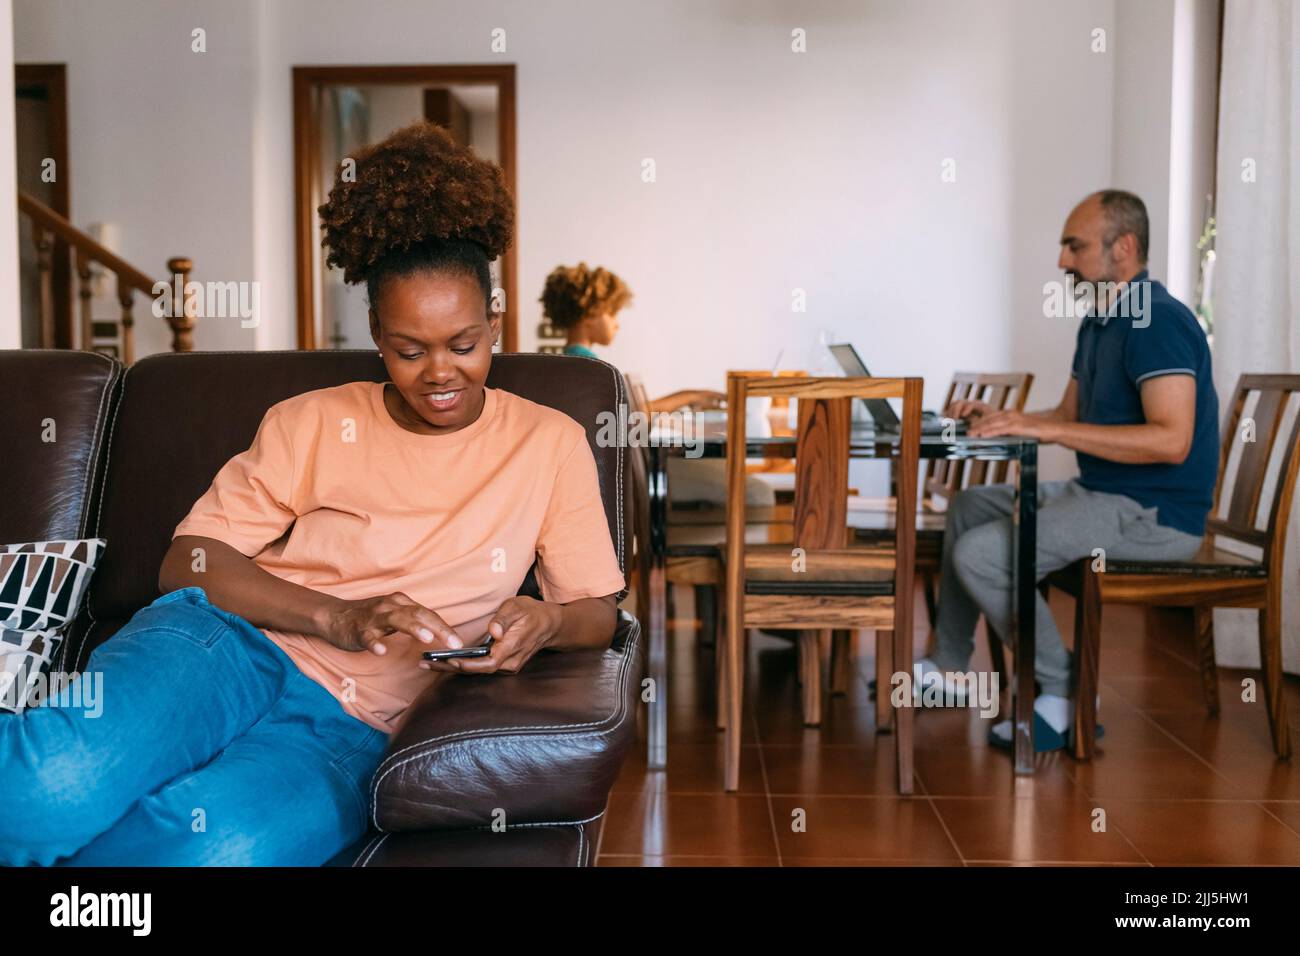 Mujer sonriente con un teléfono inteligente sentada delante de un hombre y una hija en casa Foto de stock